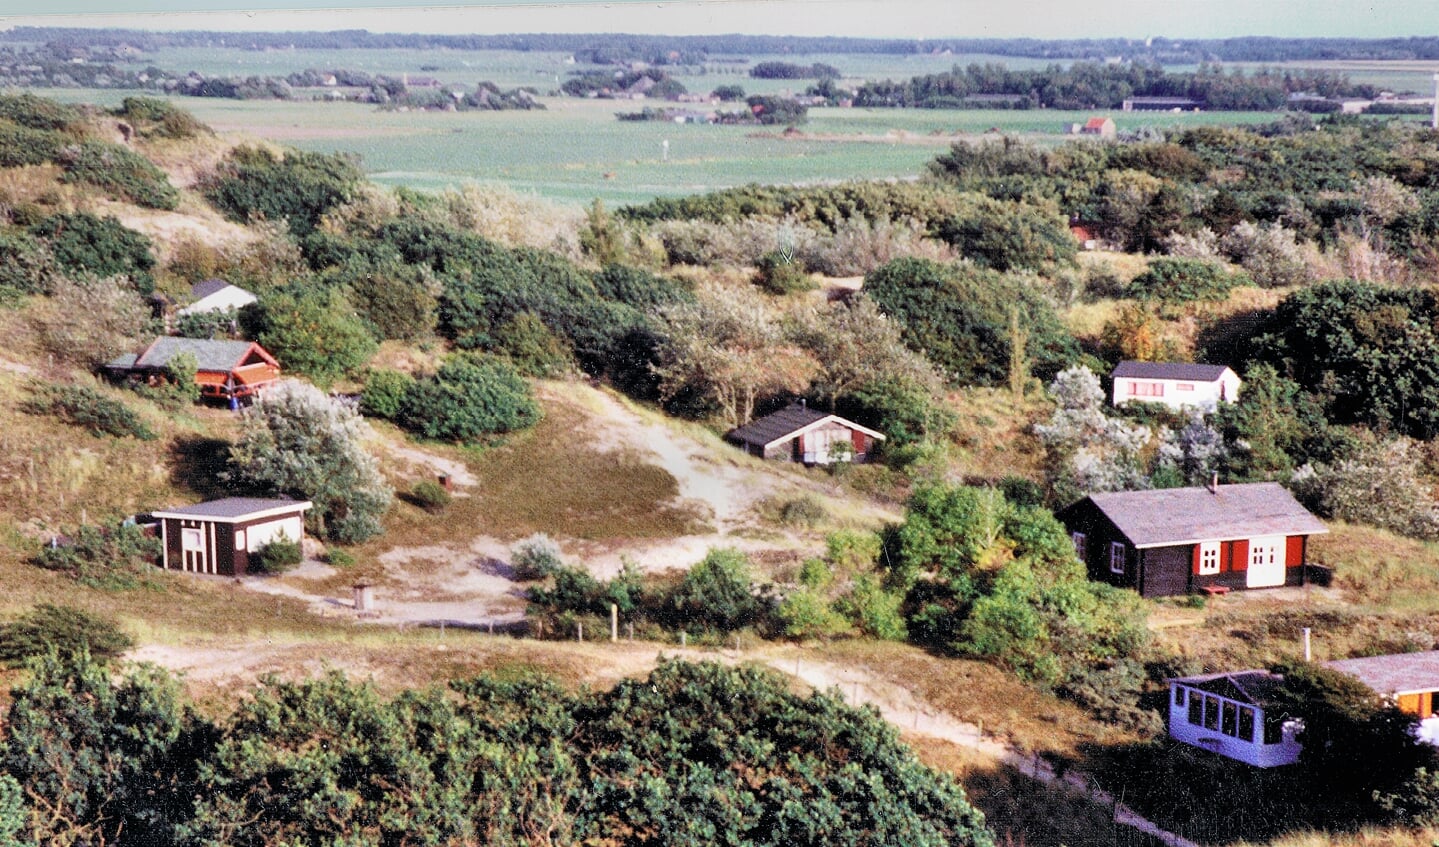 Huisjes in ’t Zandgat eind vorige eeuw.